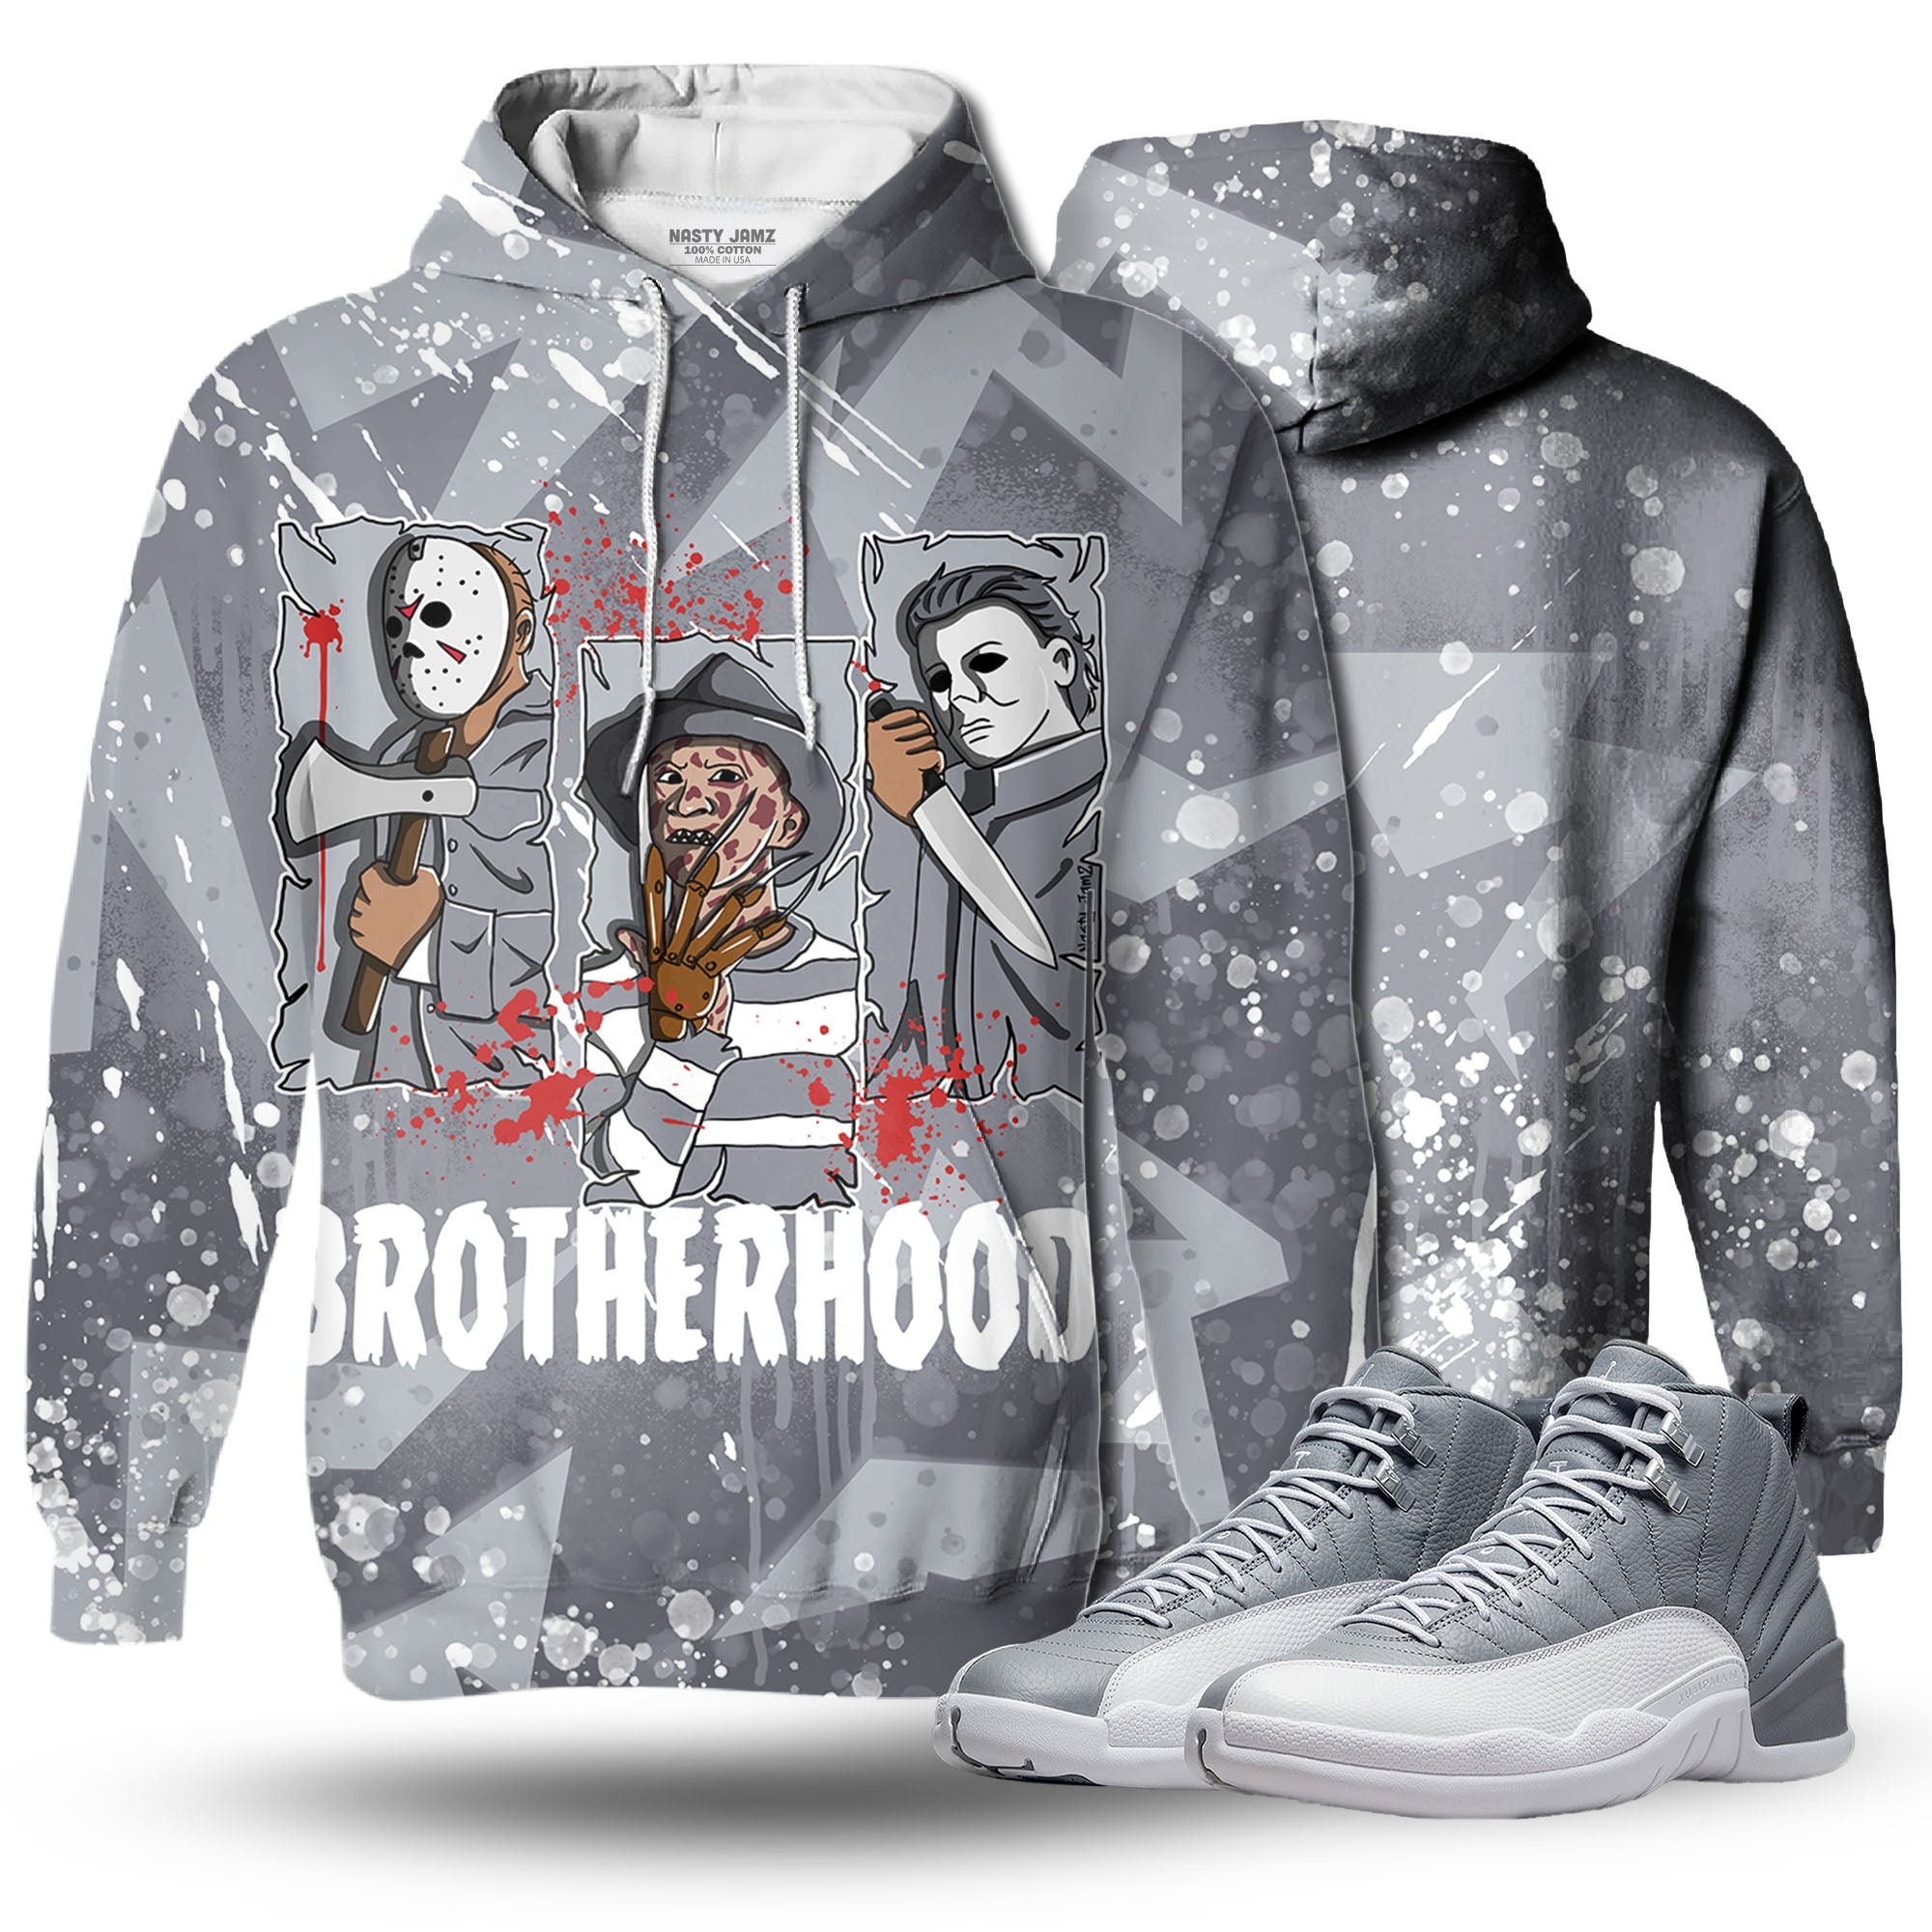 Discover Dark Brotherhood 3D Zigzag Paint Unisex matching Hoodie 3D Jordan 12 Retro Stealth outfit hoodie, oversized hoodie, sneaker match